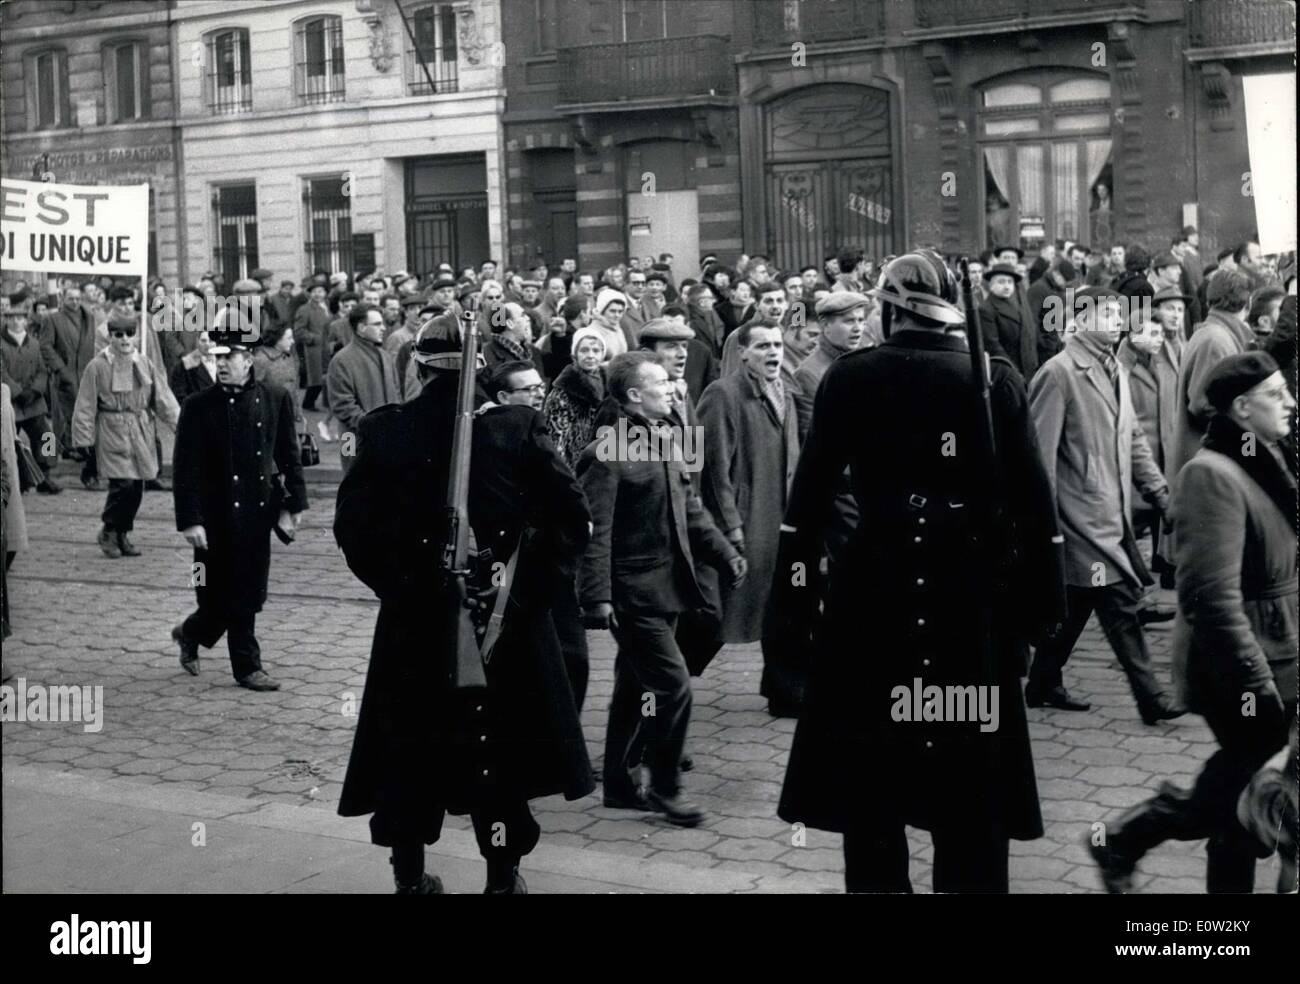 Le 29 décembre 1960 - Grève Générale en Belgique Banque D'Images